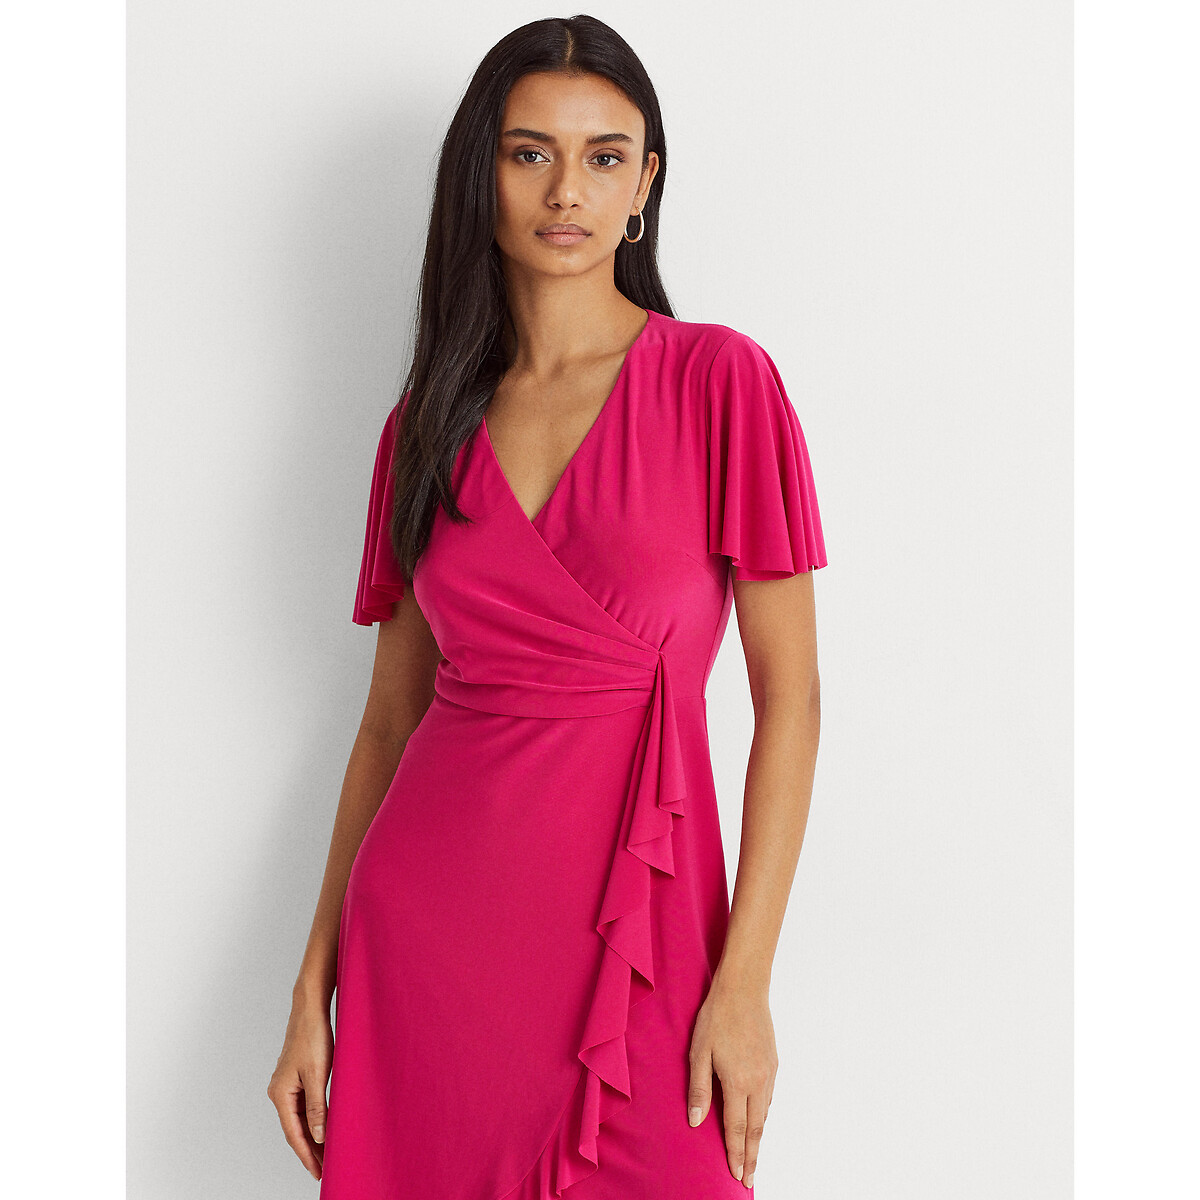 Платье LaRedoute С запахом и короткими рукавами 40 (FR) - 46 (RUS) розовый, размер 40 (FR) - 46 (RUS) С запахом и короткими рукавами 40 (FR) - 46 (RUS) розовый - фото 2